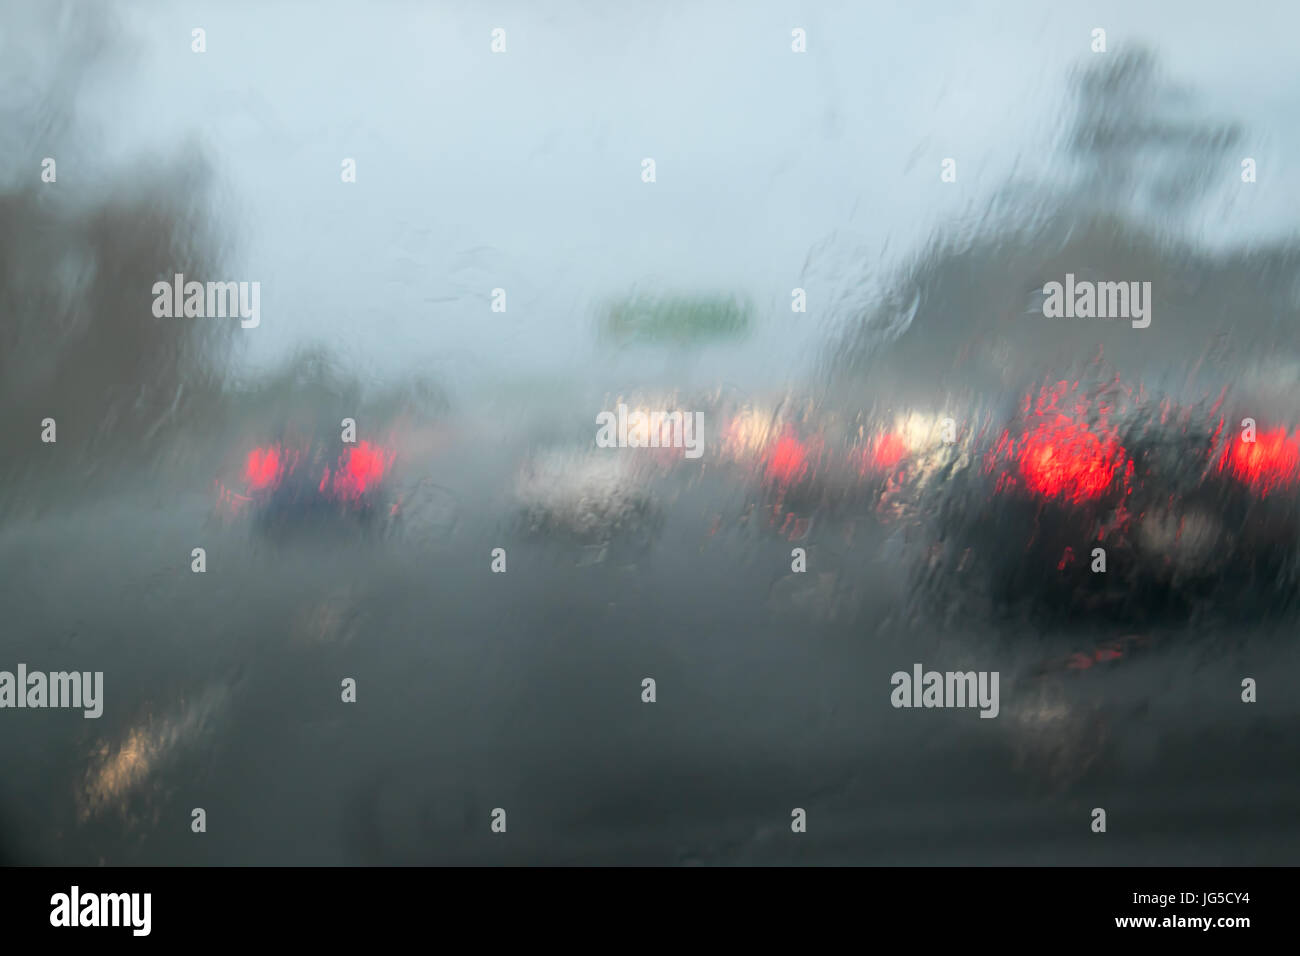 La guida con pioggia sul parabrezza auto sulla Statale 1, Auckland, Nuova Zelanda, NZ - auto di fronte non hanno luci accese Foto Stock